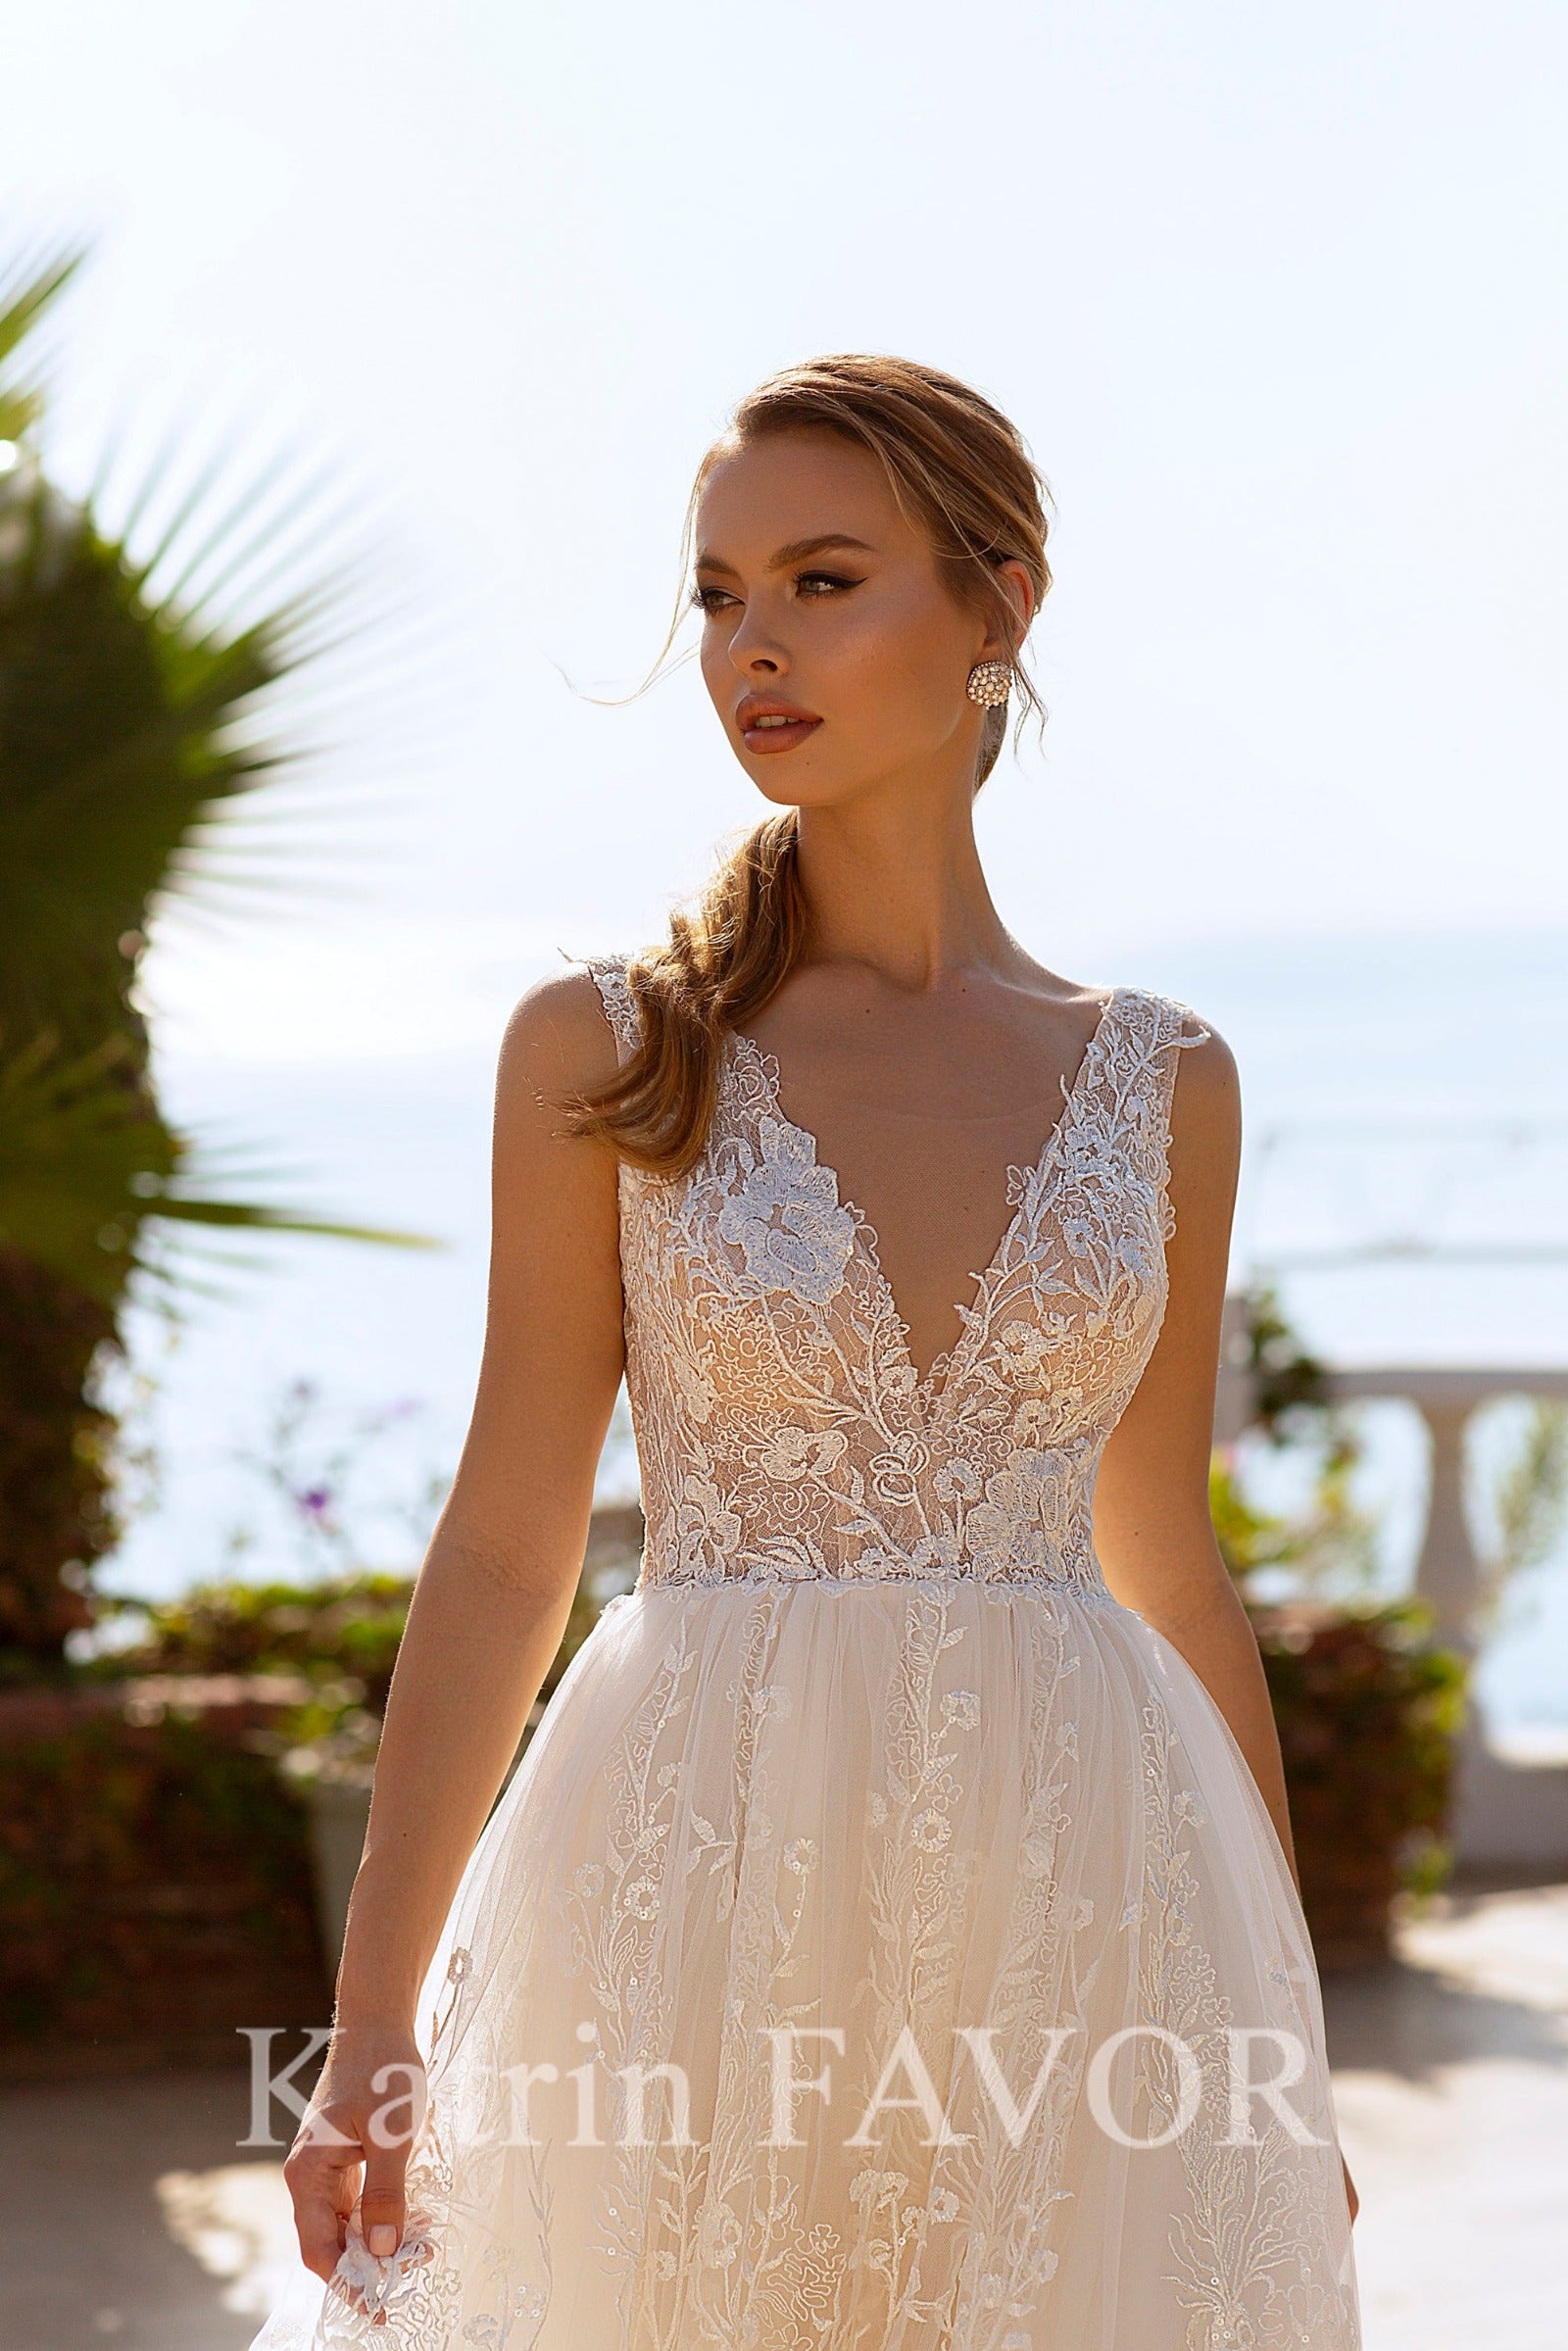 KatrinFAVORboutique-Floral lace a-line wedding dress